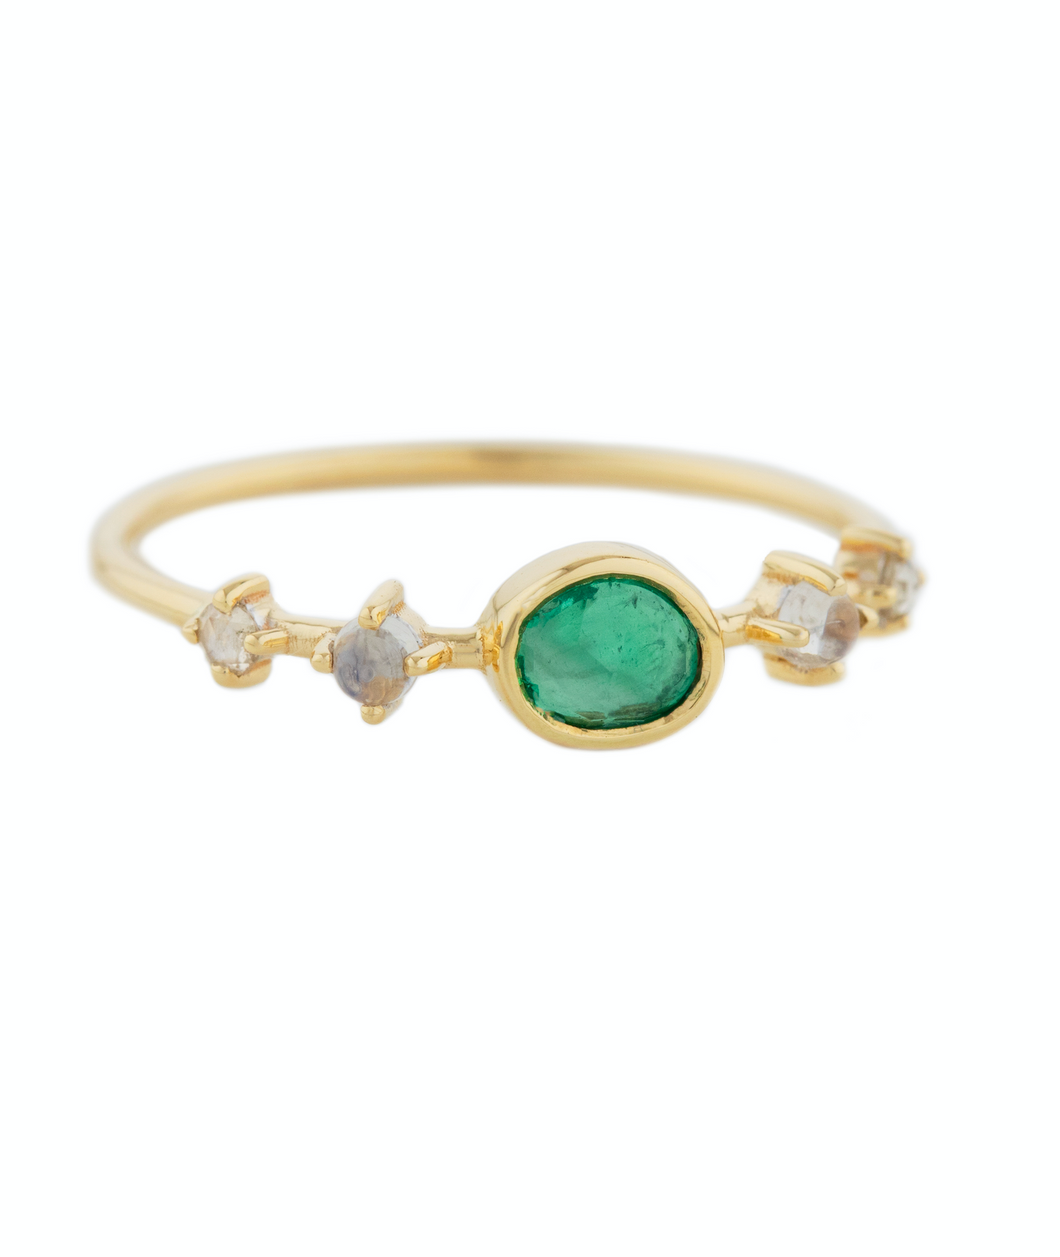 Celine Daoust 14k Emerald/ Moonstone/ Diamond Ring